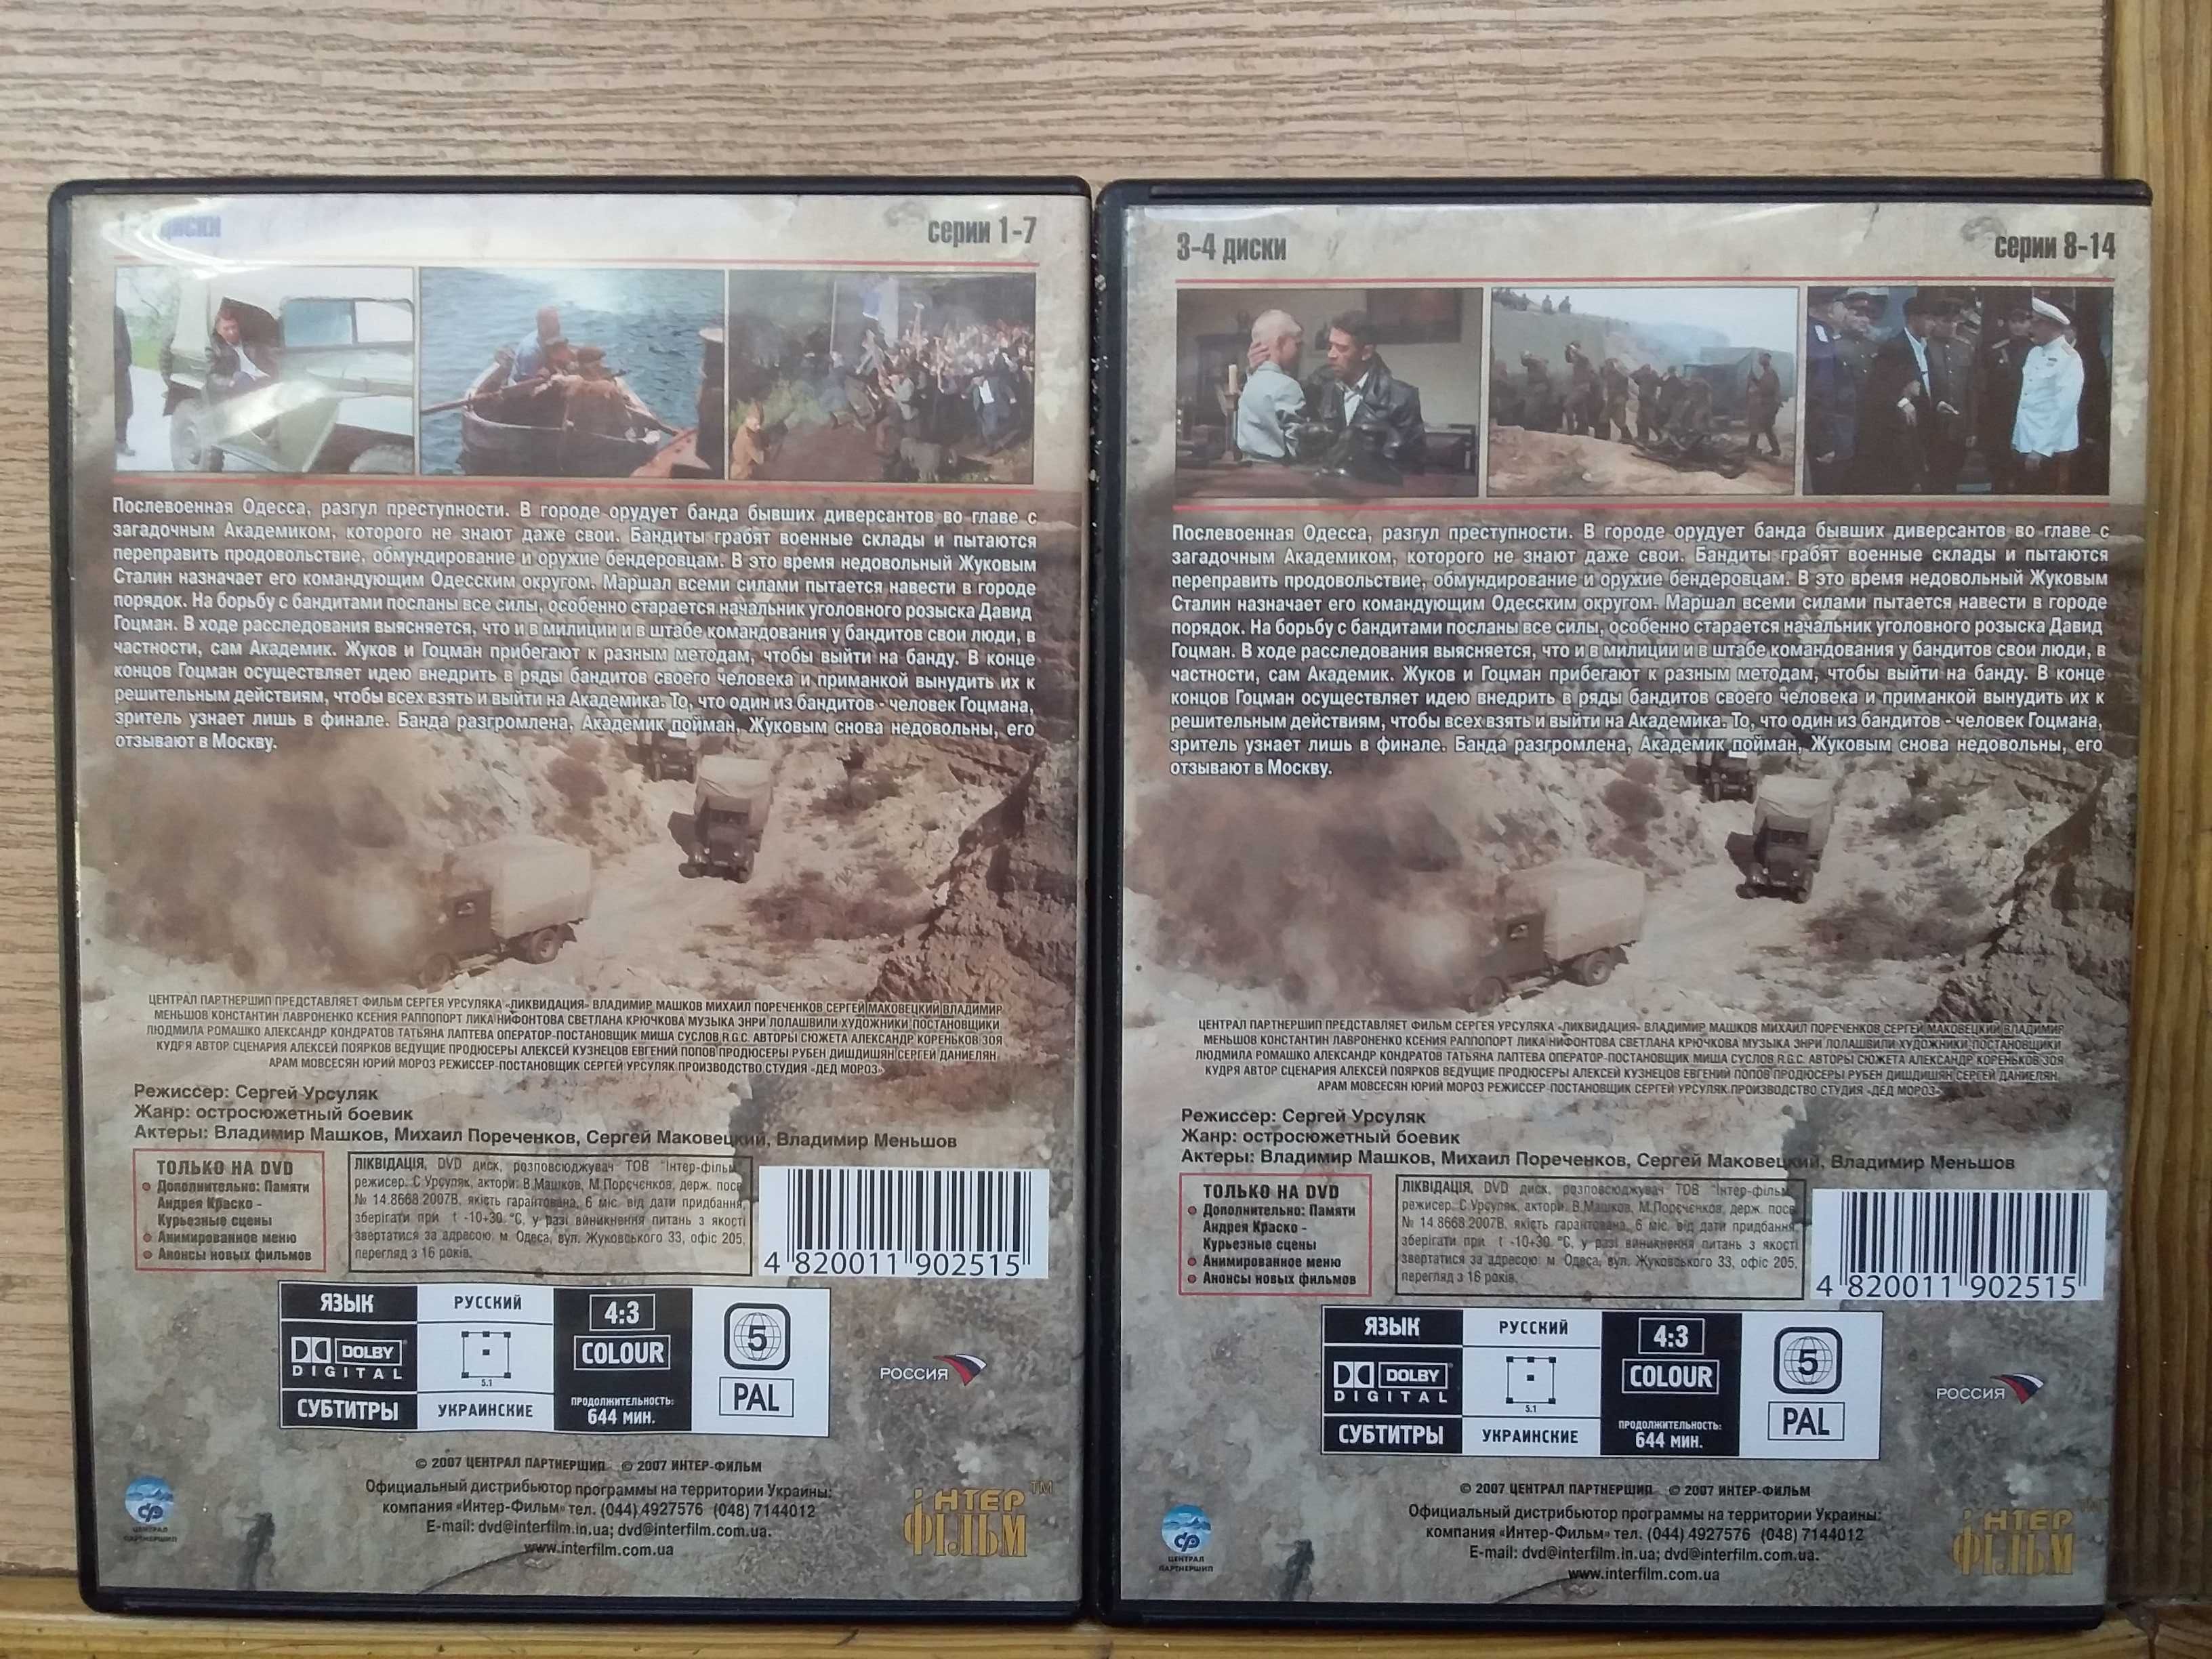 DVD "Ликвидация" на 4-х дисках в сліпкейсі ліцензія 200грн